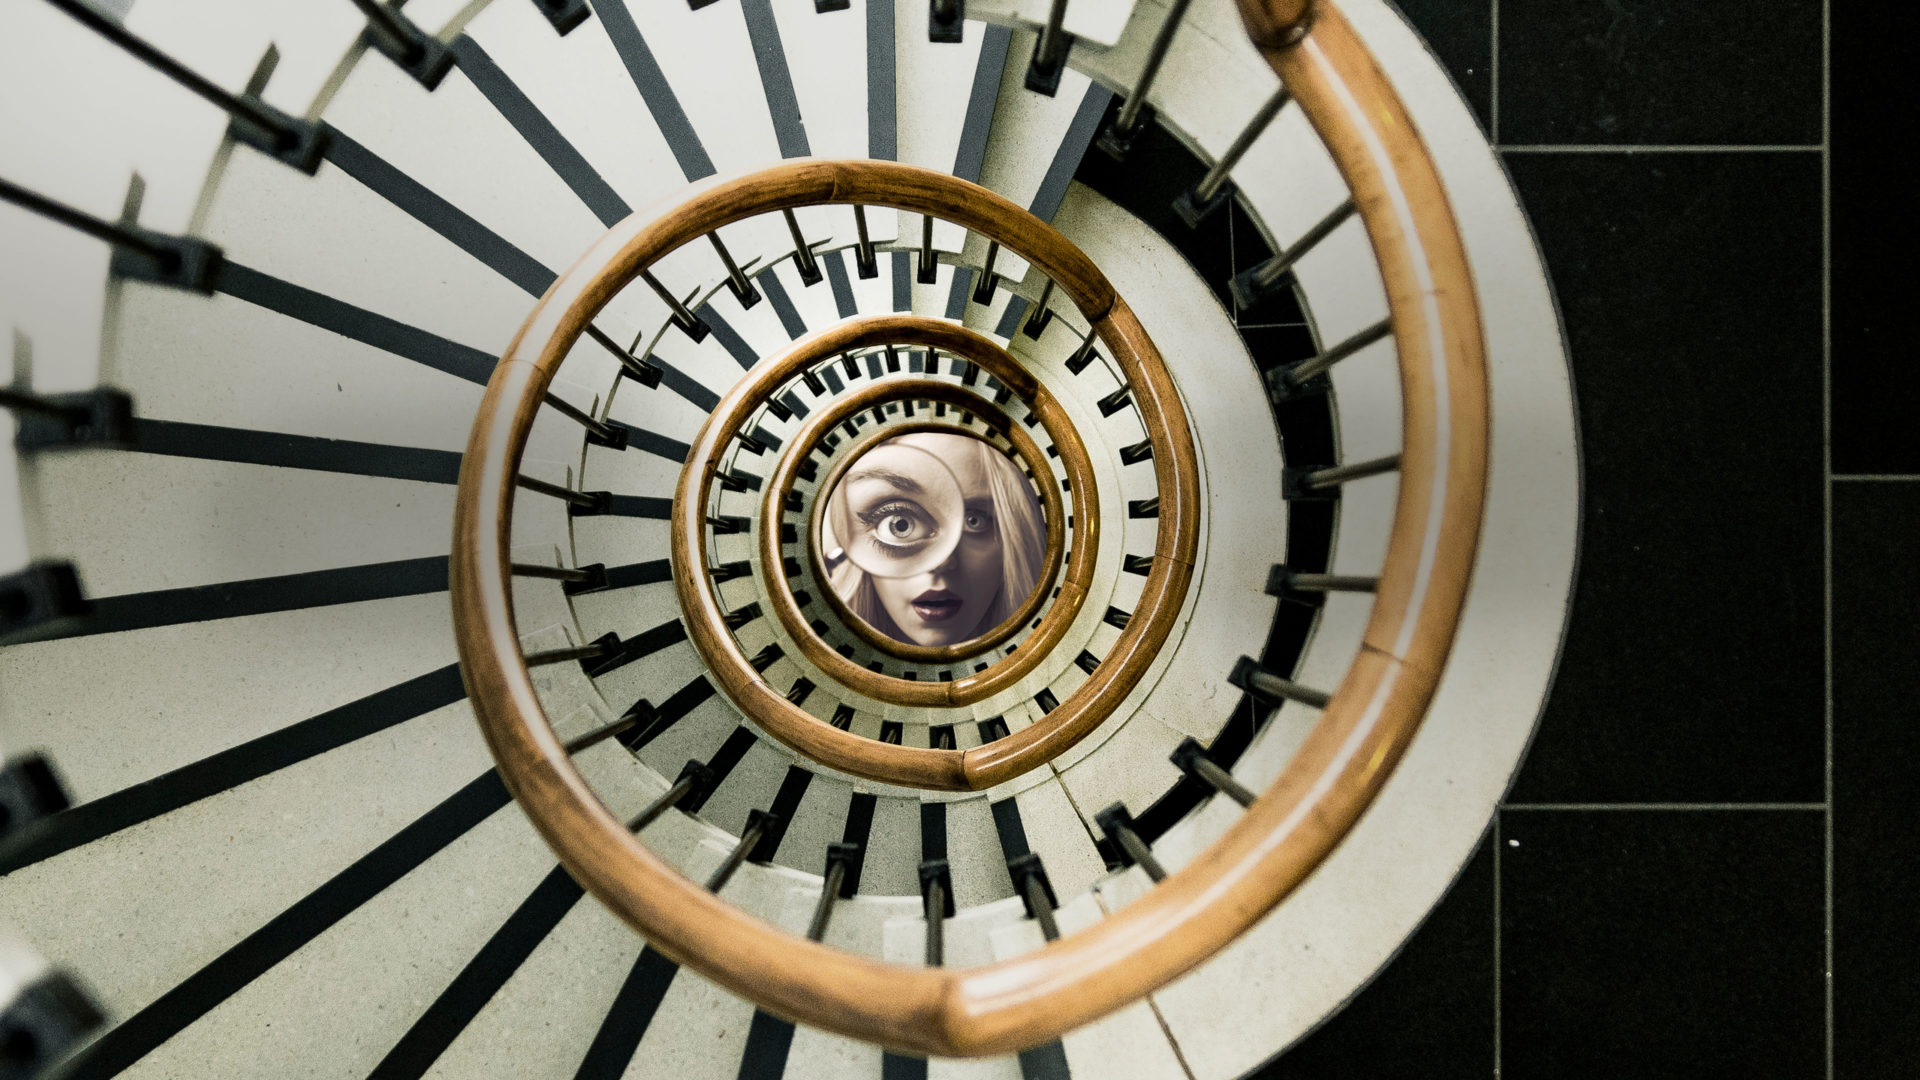 Elokuvajuliste, jossa portaat laskeutuvat spriaalina. Spiraalin keskellä on nuori nainen, silmällään suurennuslasi.